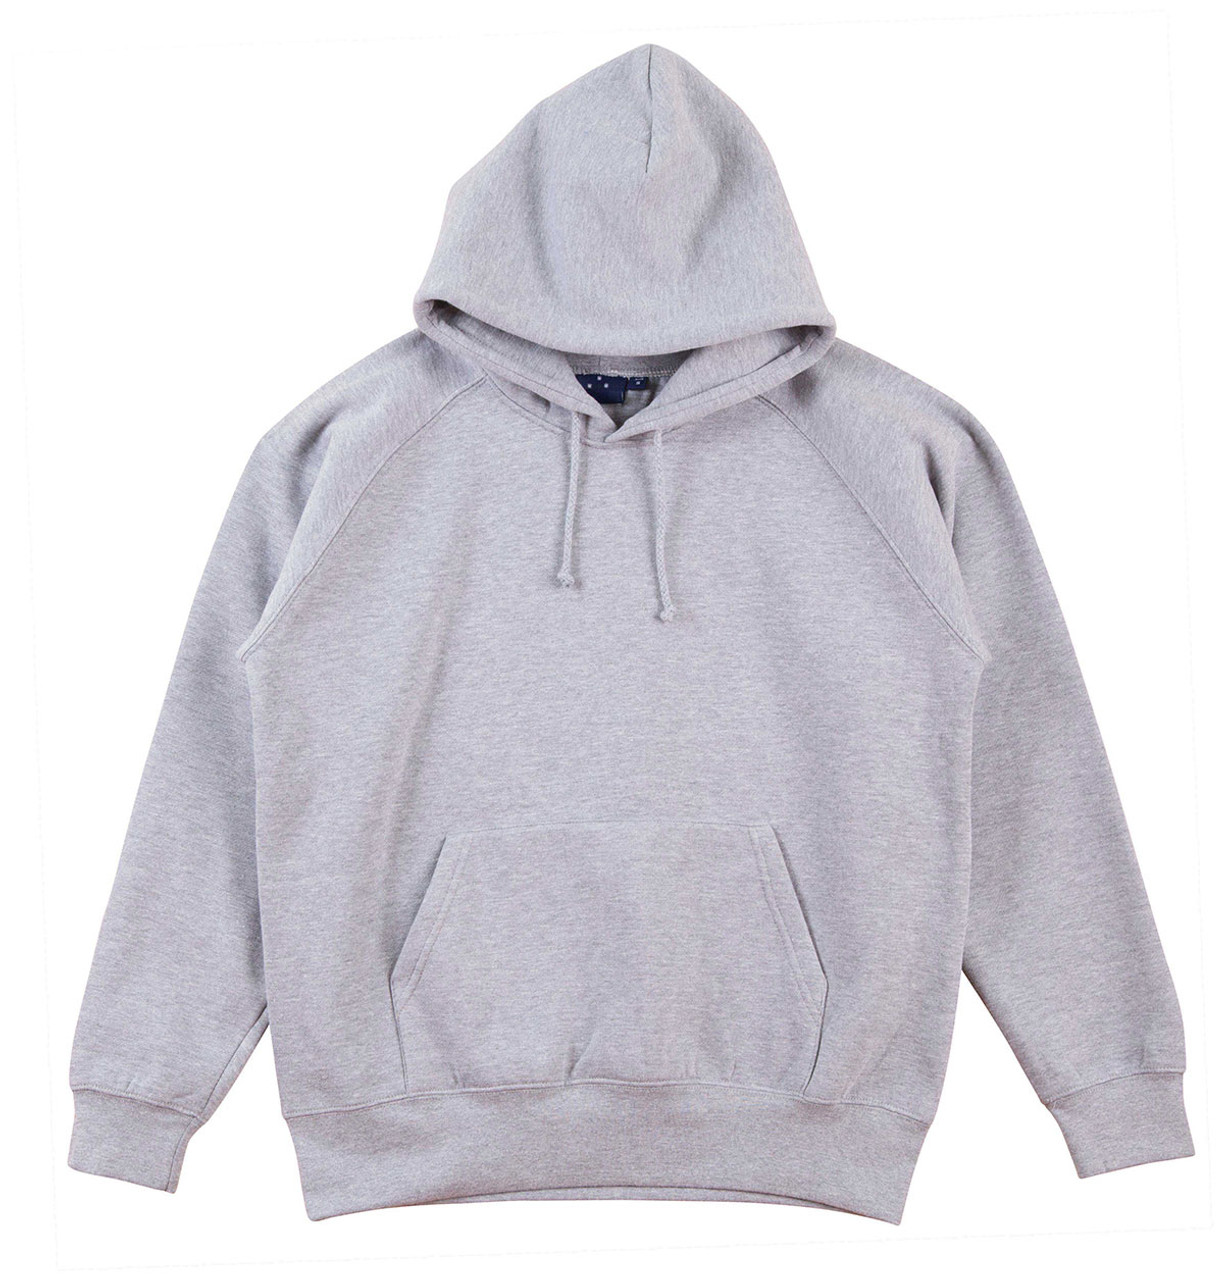 HOODIES | plain cotton-rich hoodies men | blank hoody & clothing wholesale